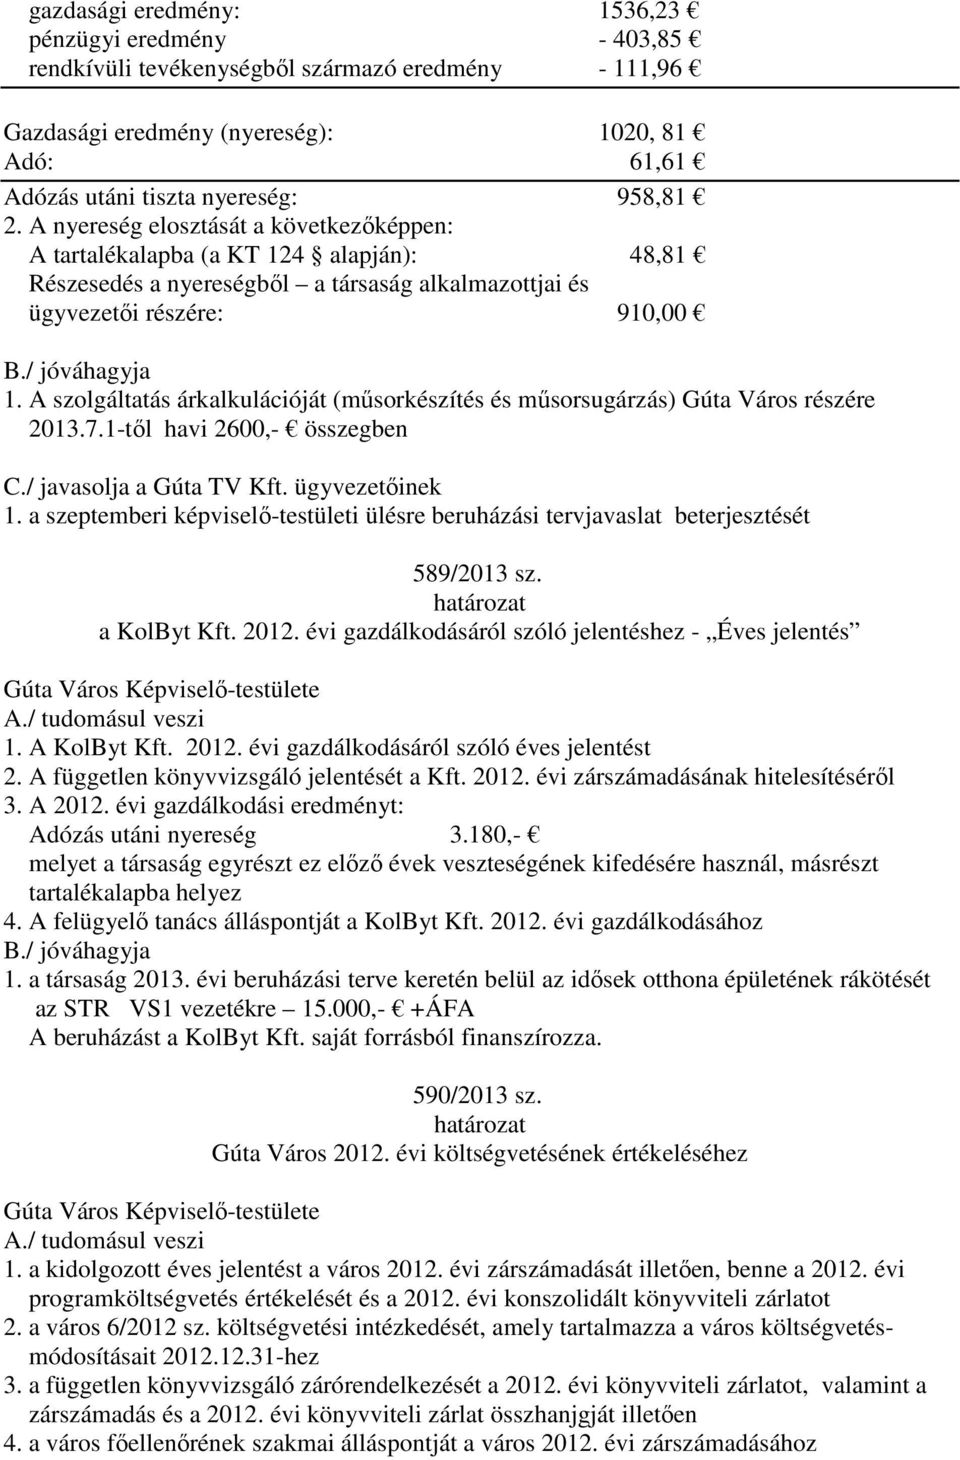 A szolgáltatás árkalkulációját (műsorkészítés és műsorsugárzás) Gúta Város részére 2013.7.1-től havi 2600,- összegben C./ javasolja a Gúta TV Kft. ügyvezetőinek 1.